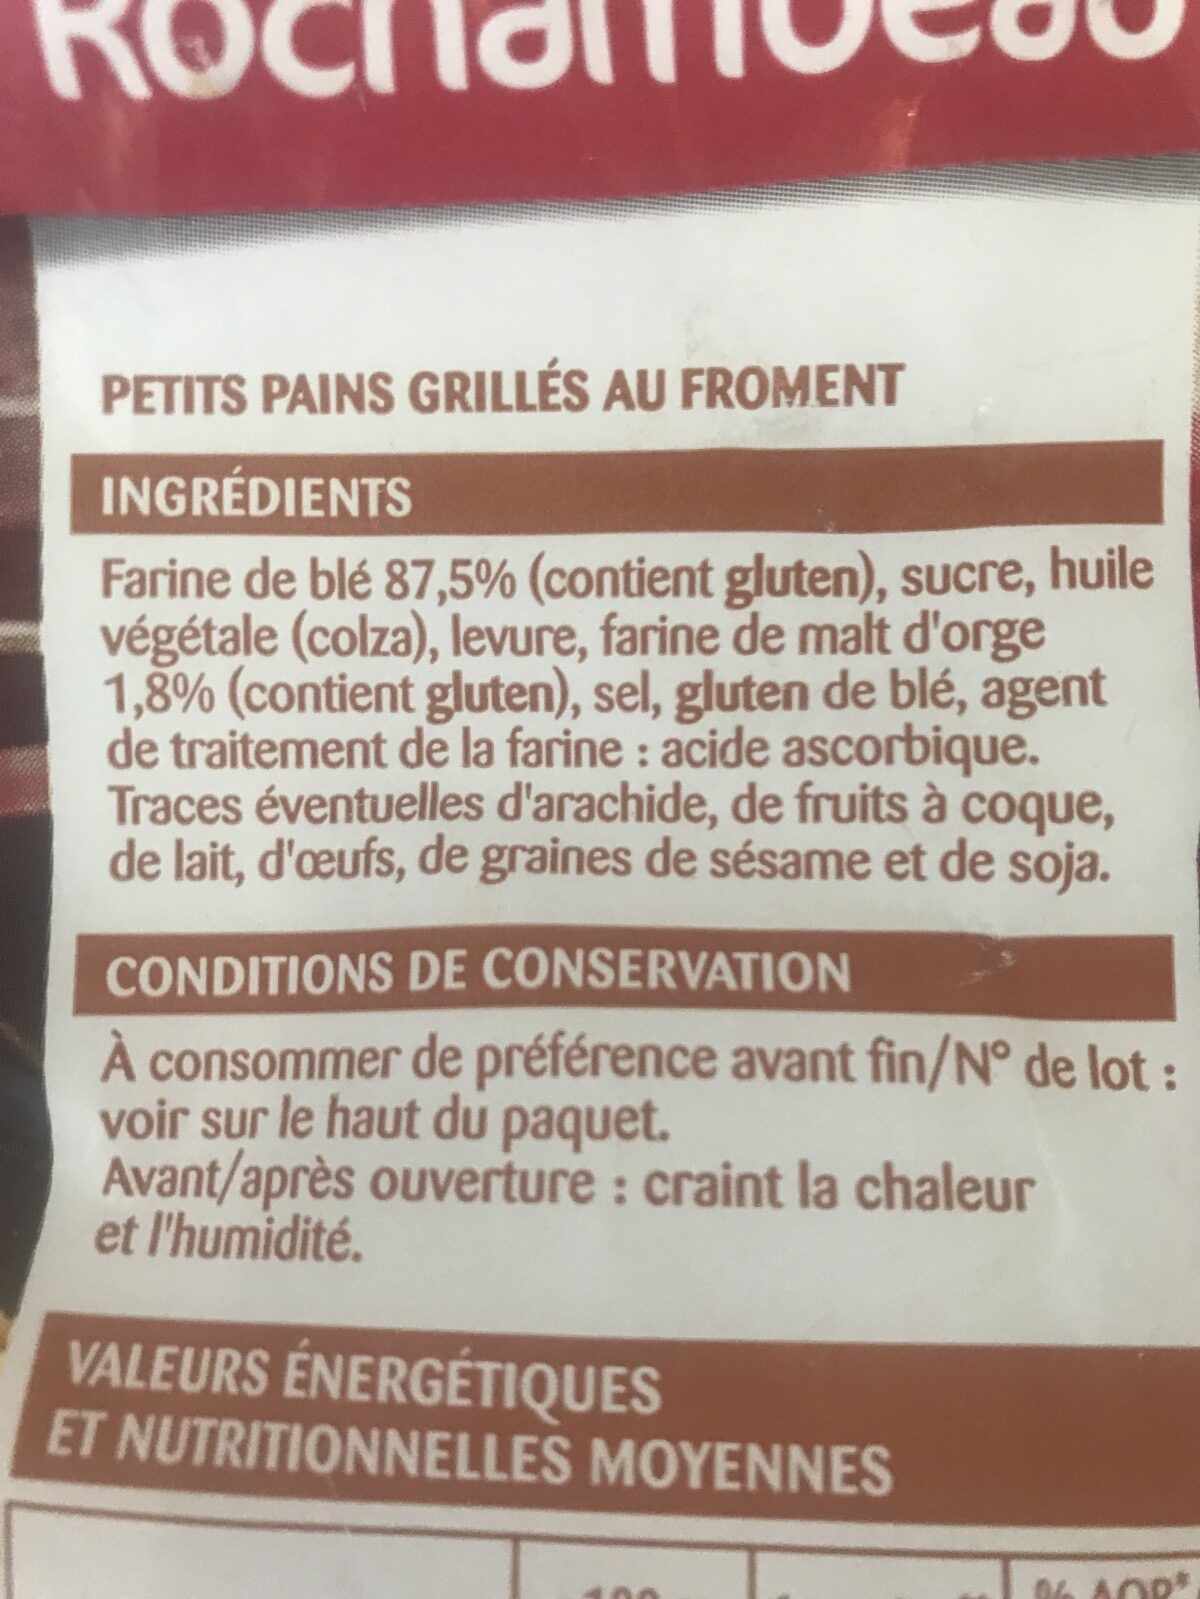 Petits pains grillés au froment - Ingredients - fr